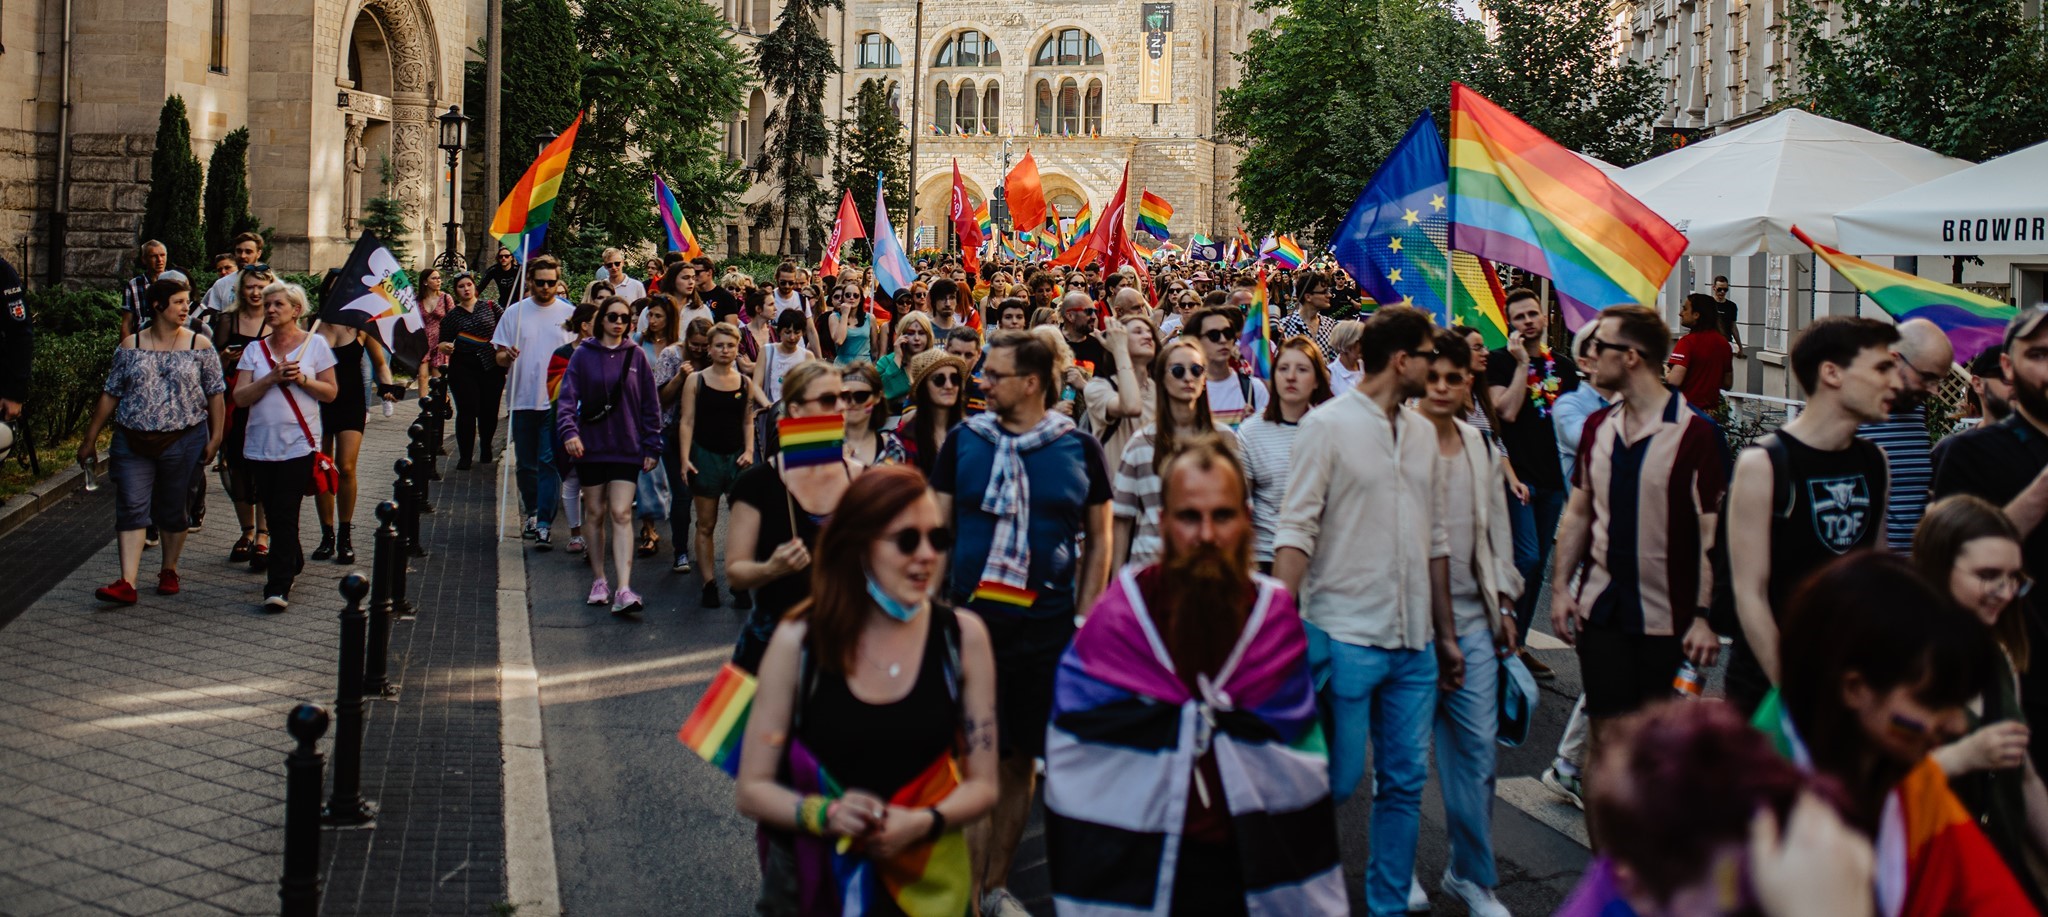 Poznan Pride, Poland